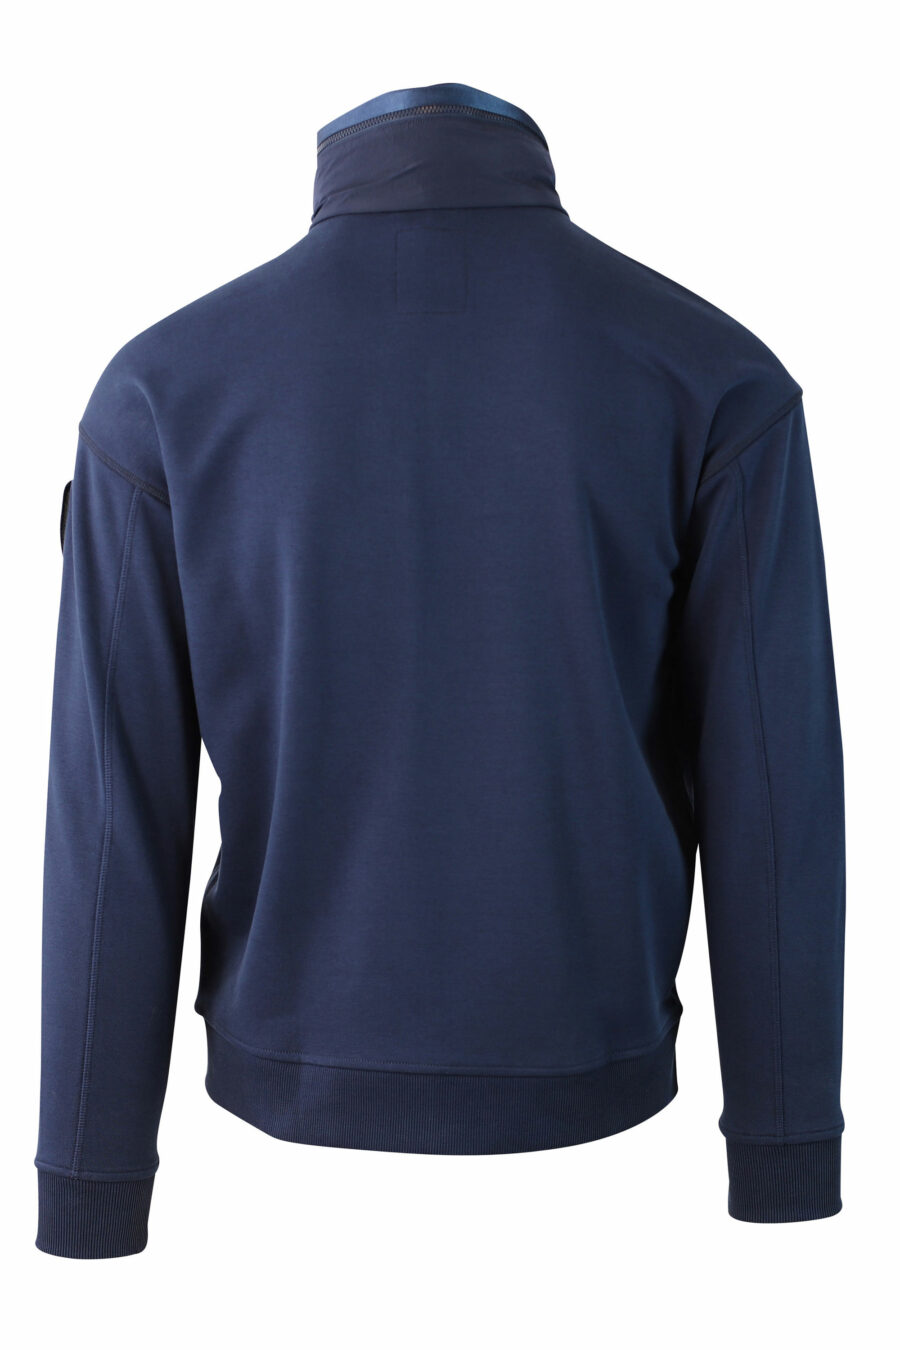 Camisola de lã azul com fecho de correr e remendo - IMG 0029 1